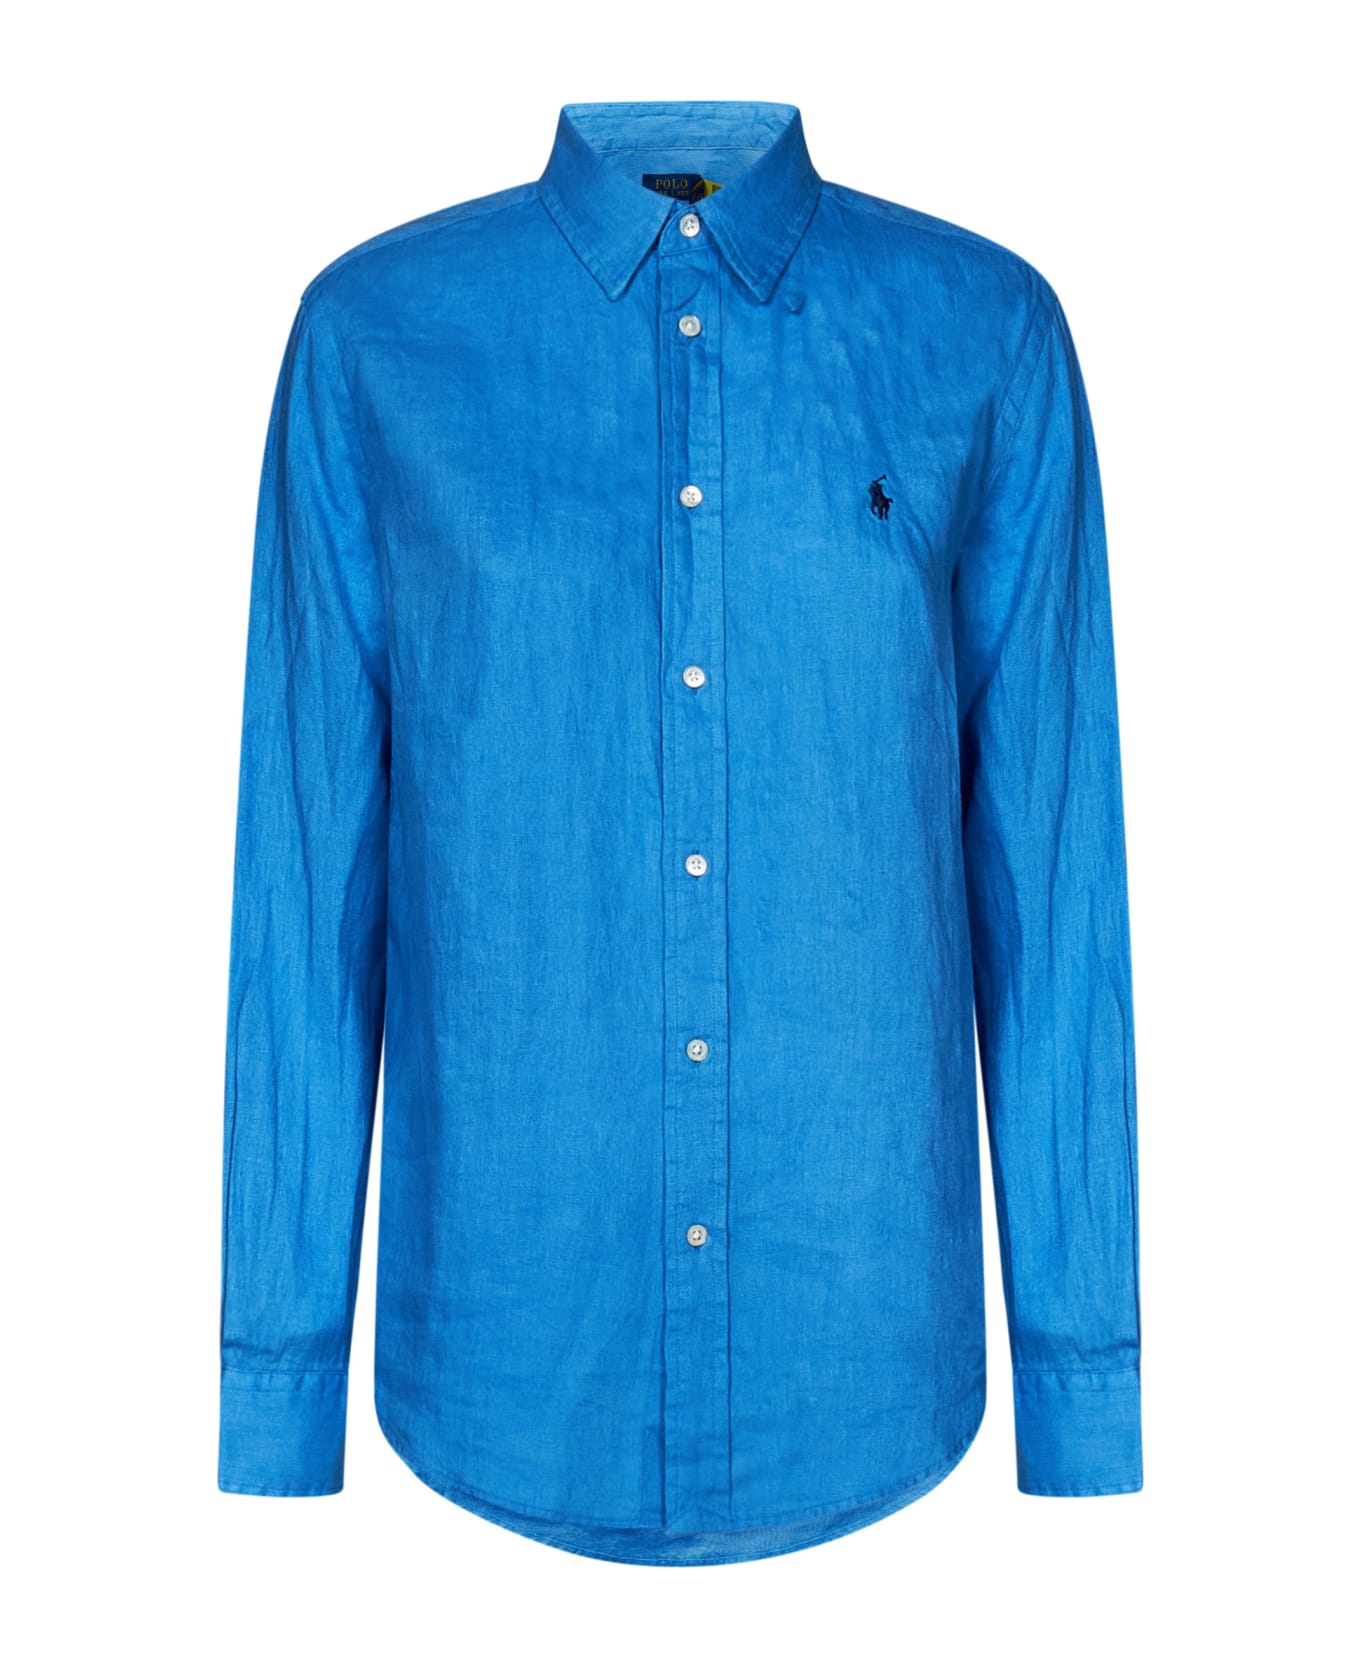 Polo Ralph Lauren Shirt - Riviera Blue